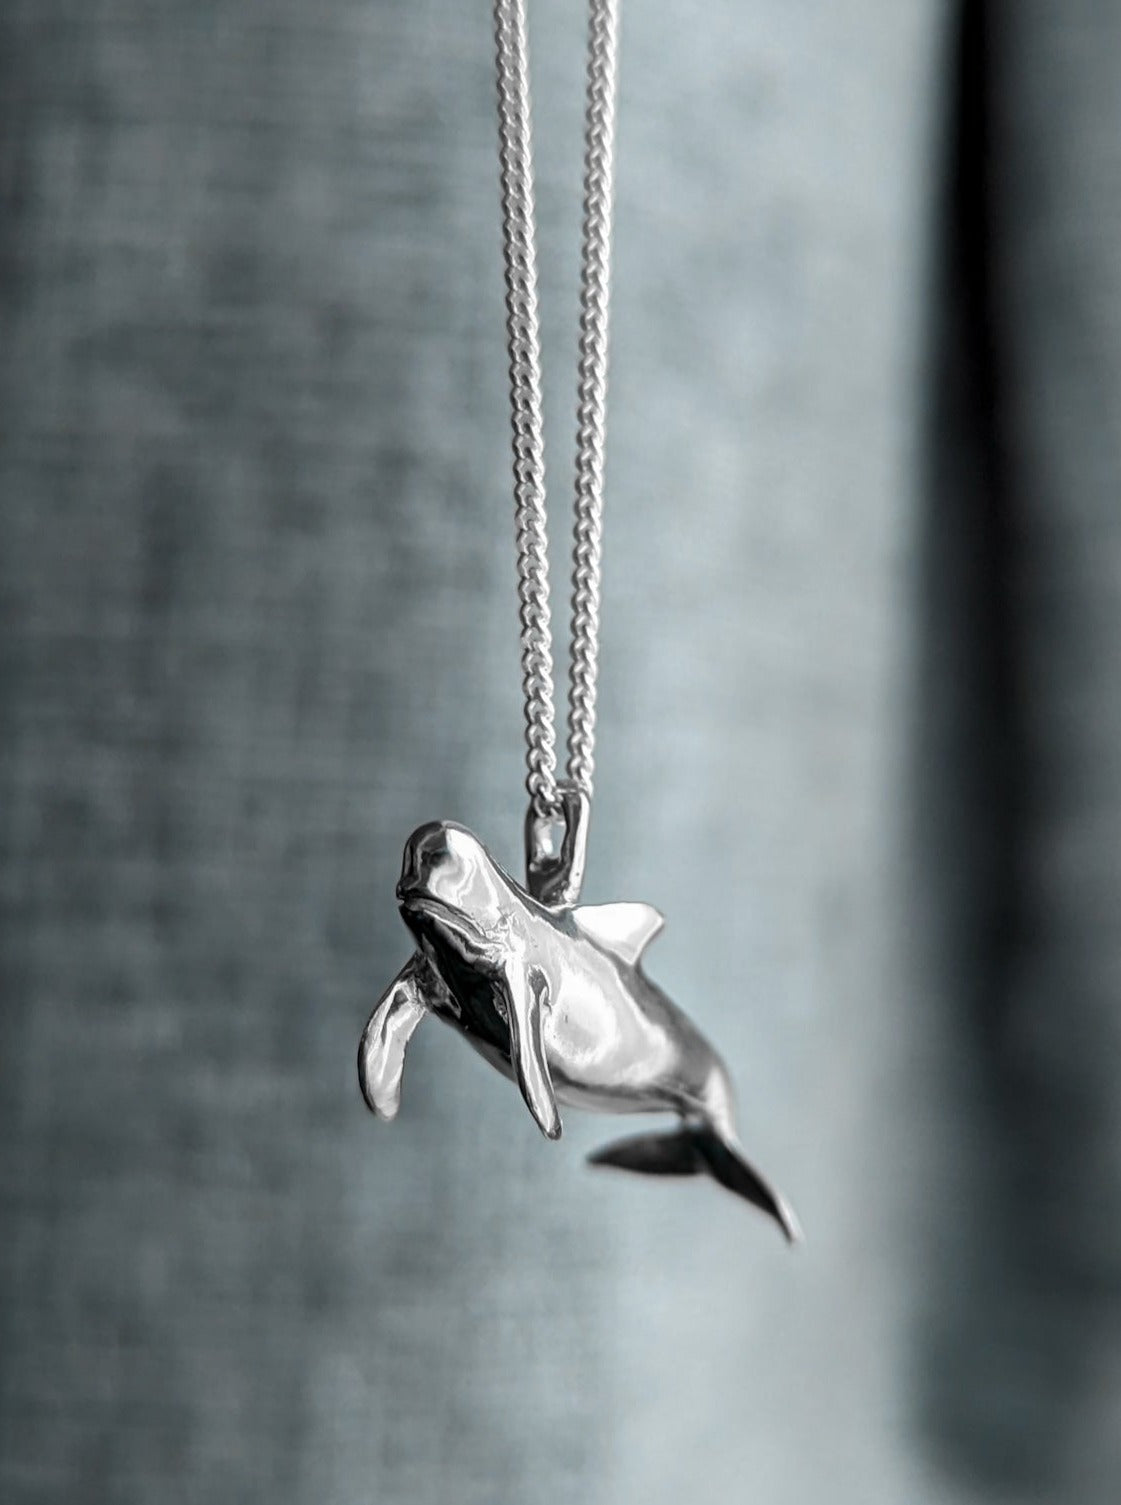 Realistic silver pilot whale pendant